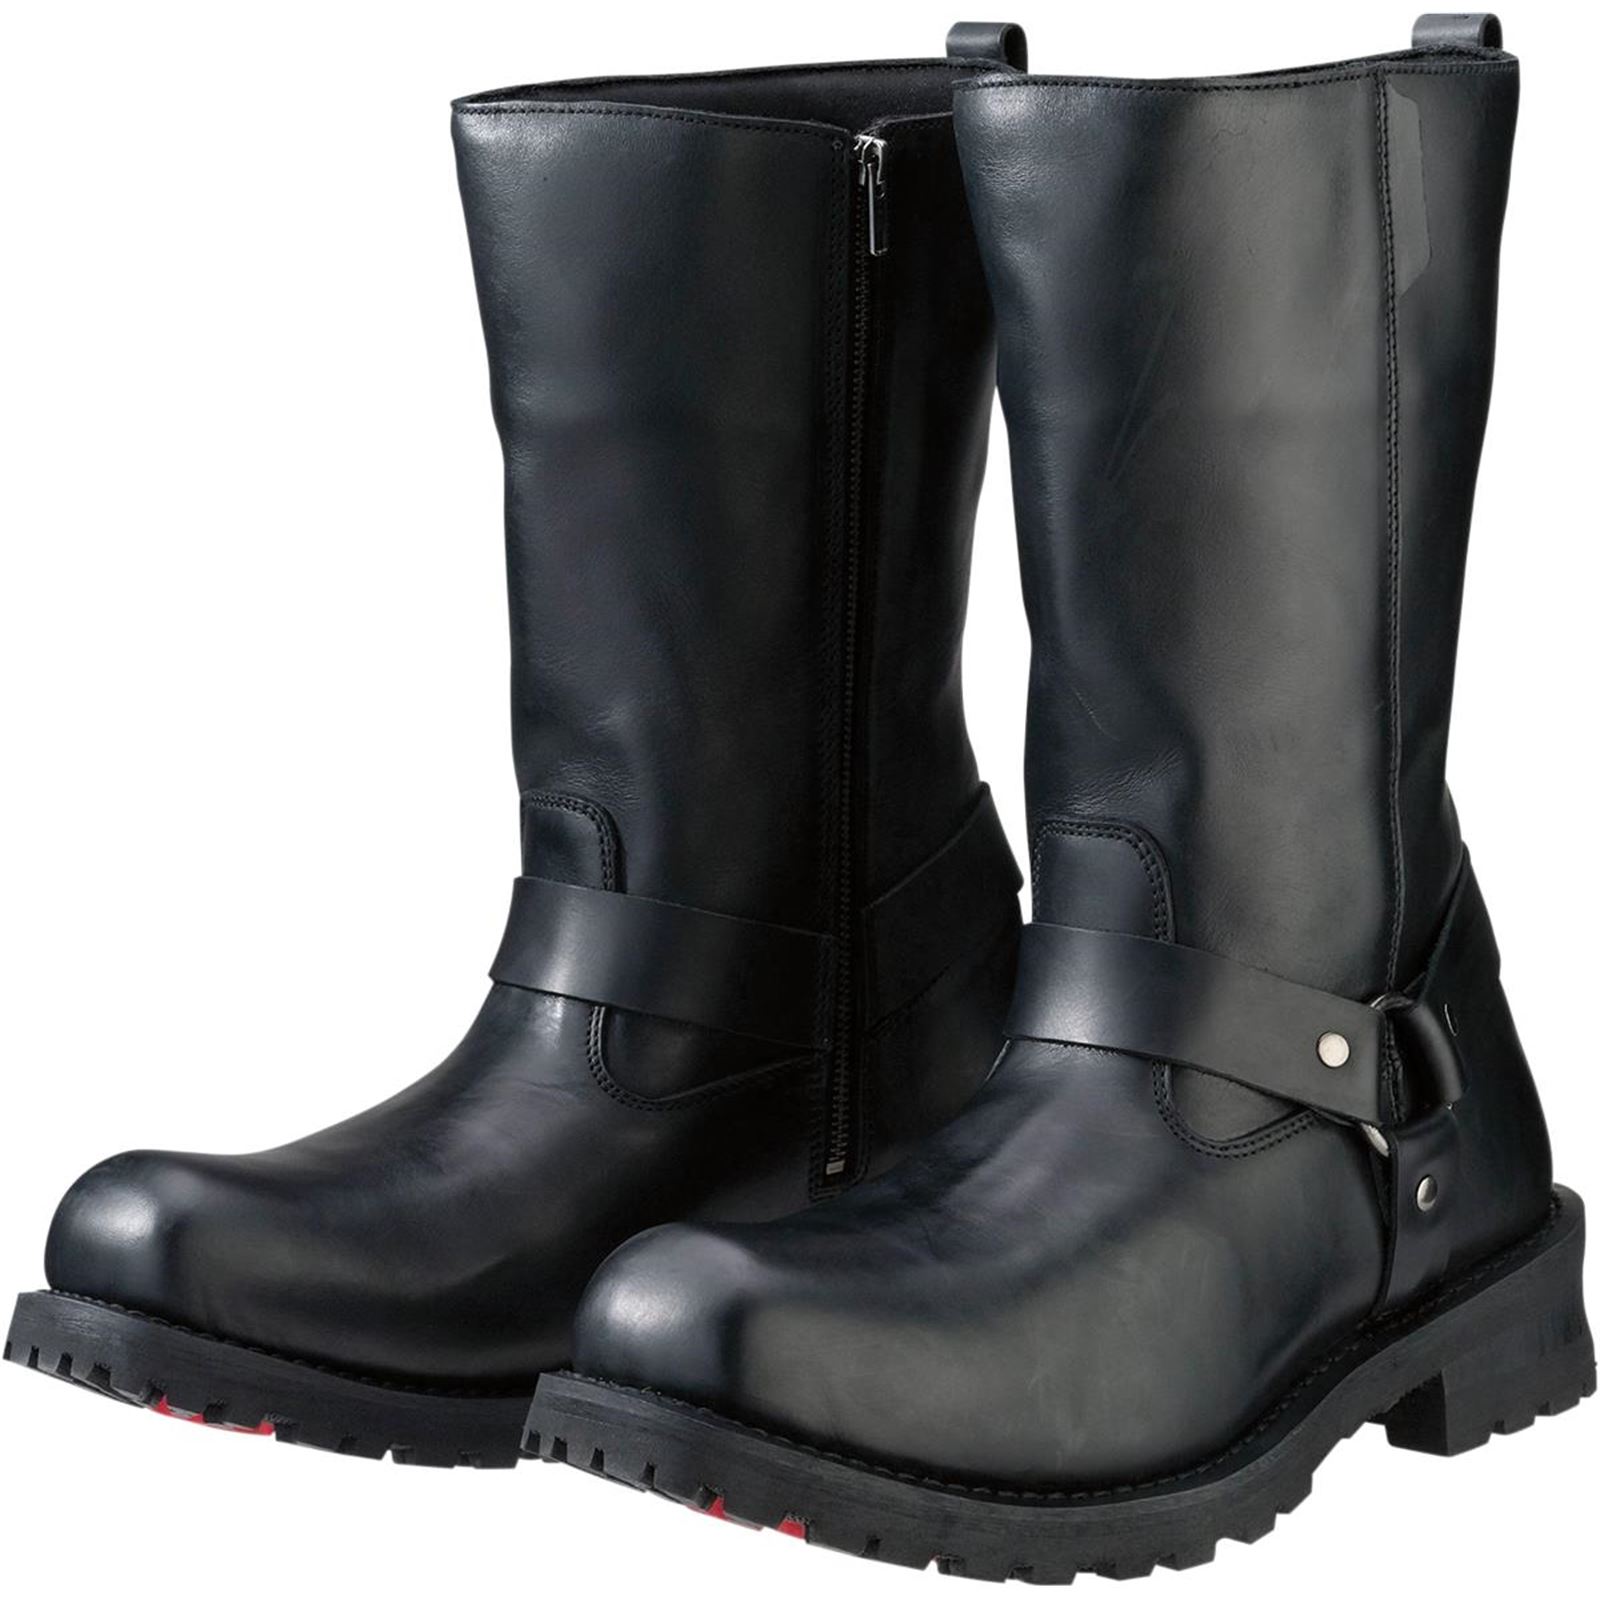 Z1R Riot Boots - Black - Size 10.5